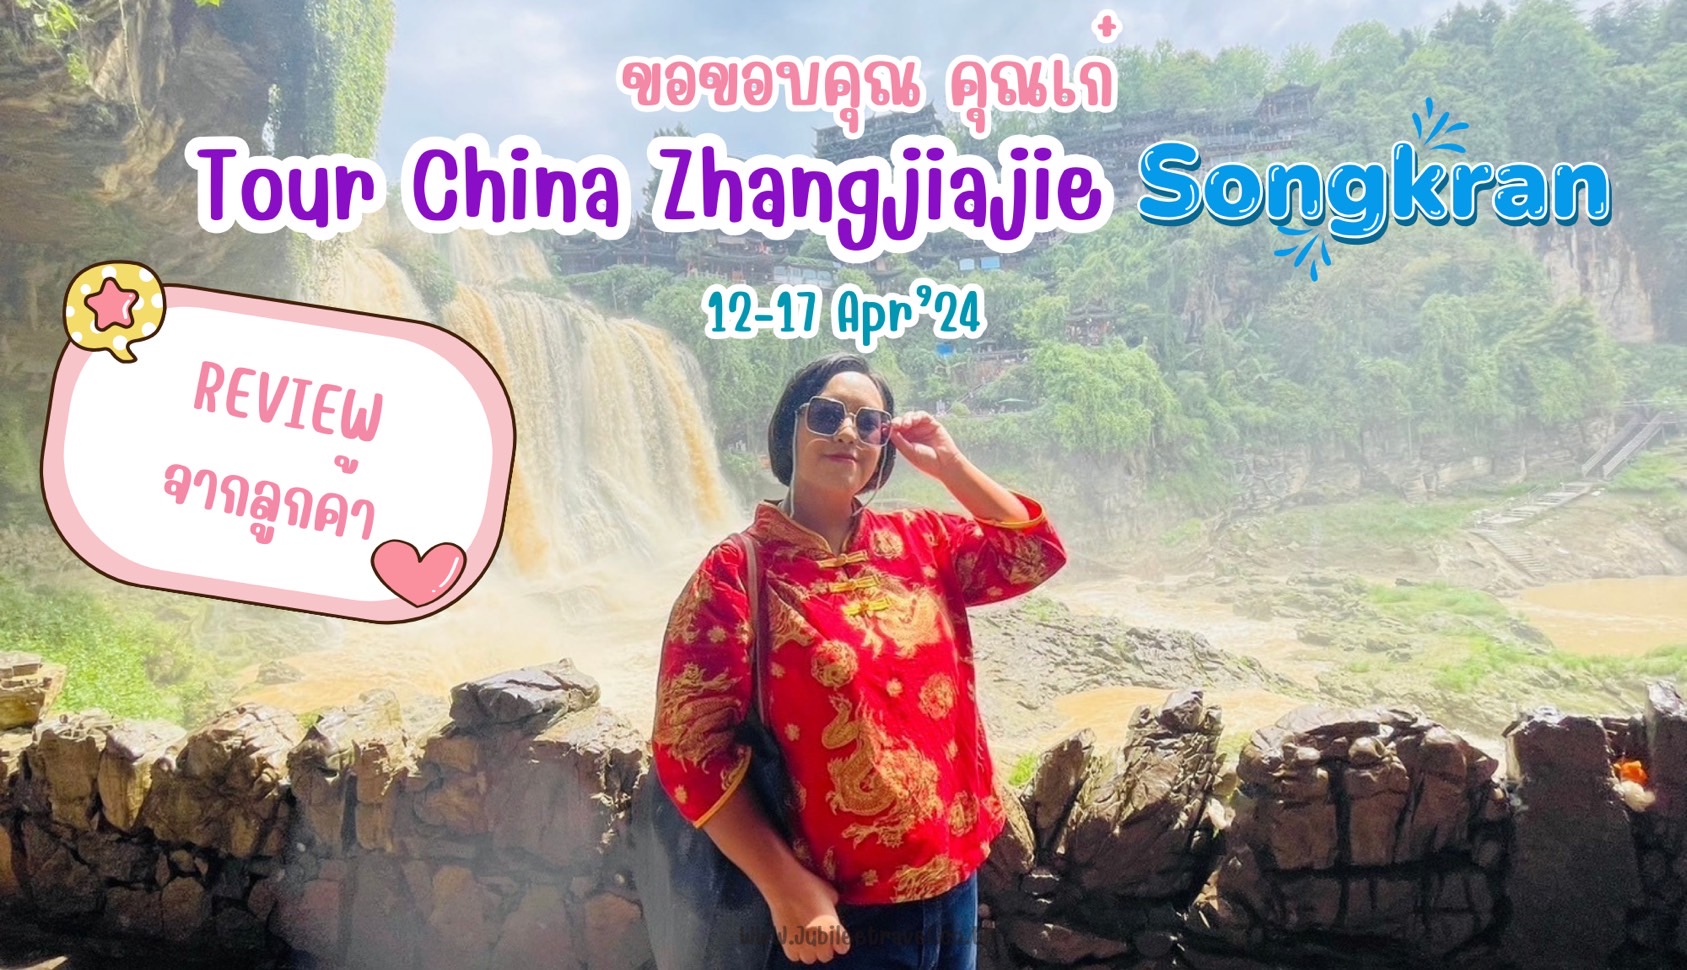 รีวิวจากลูกค้า : คุณเก๋ Tour China Zhangjiajie Songkran 12 – 17 Apr’24